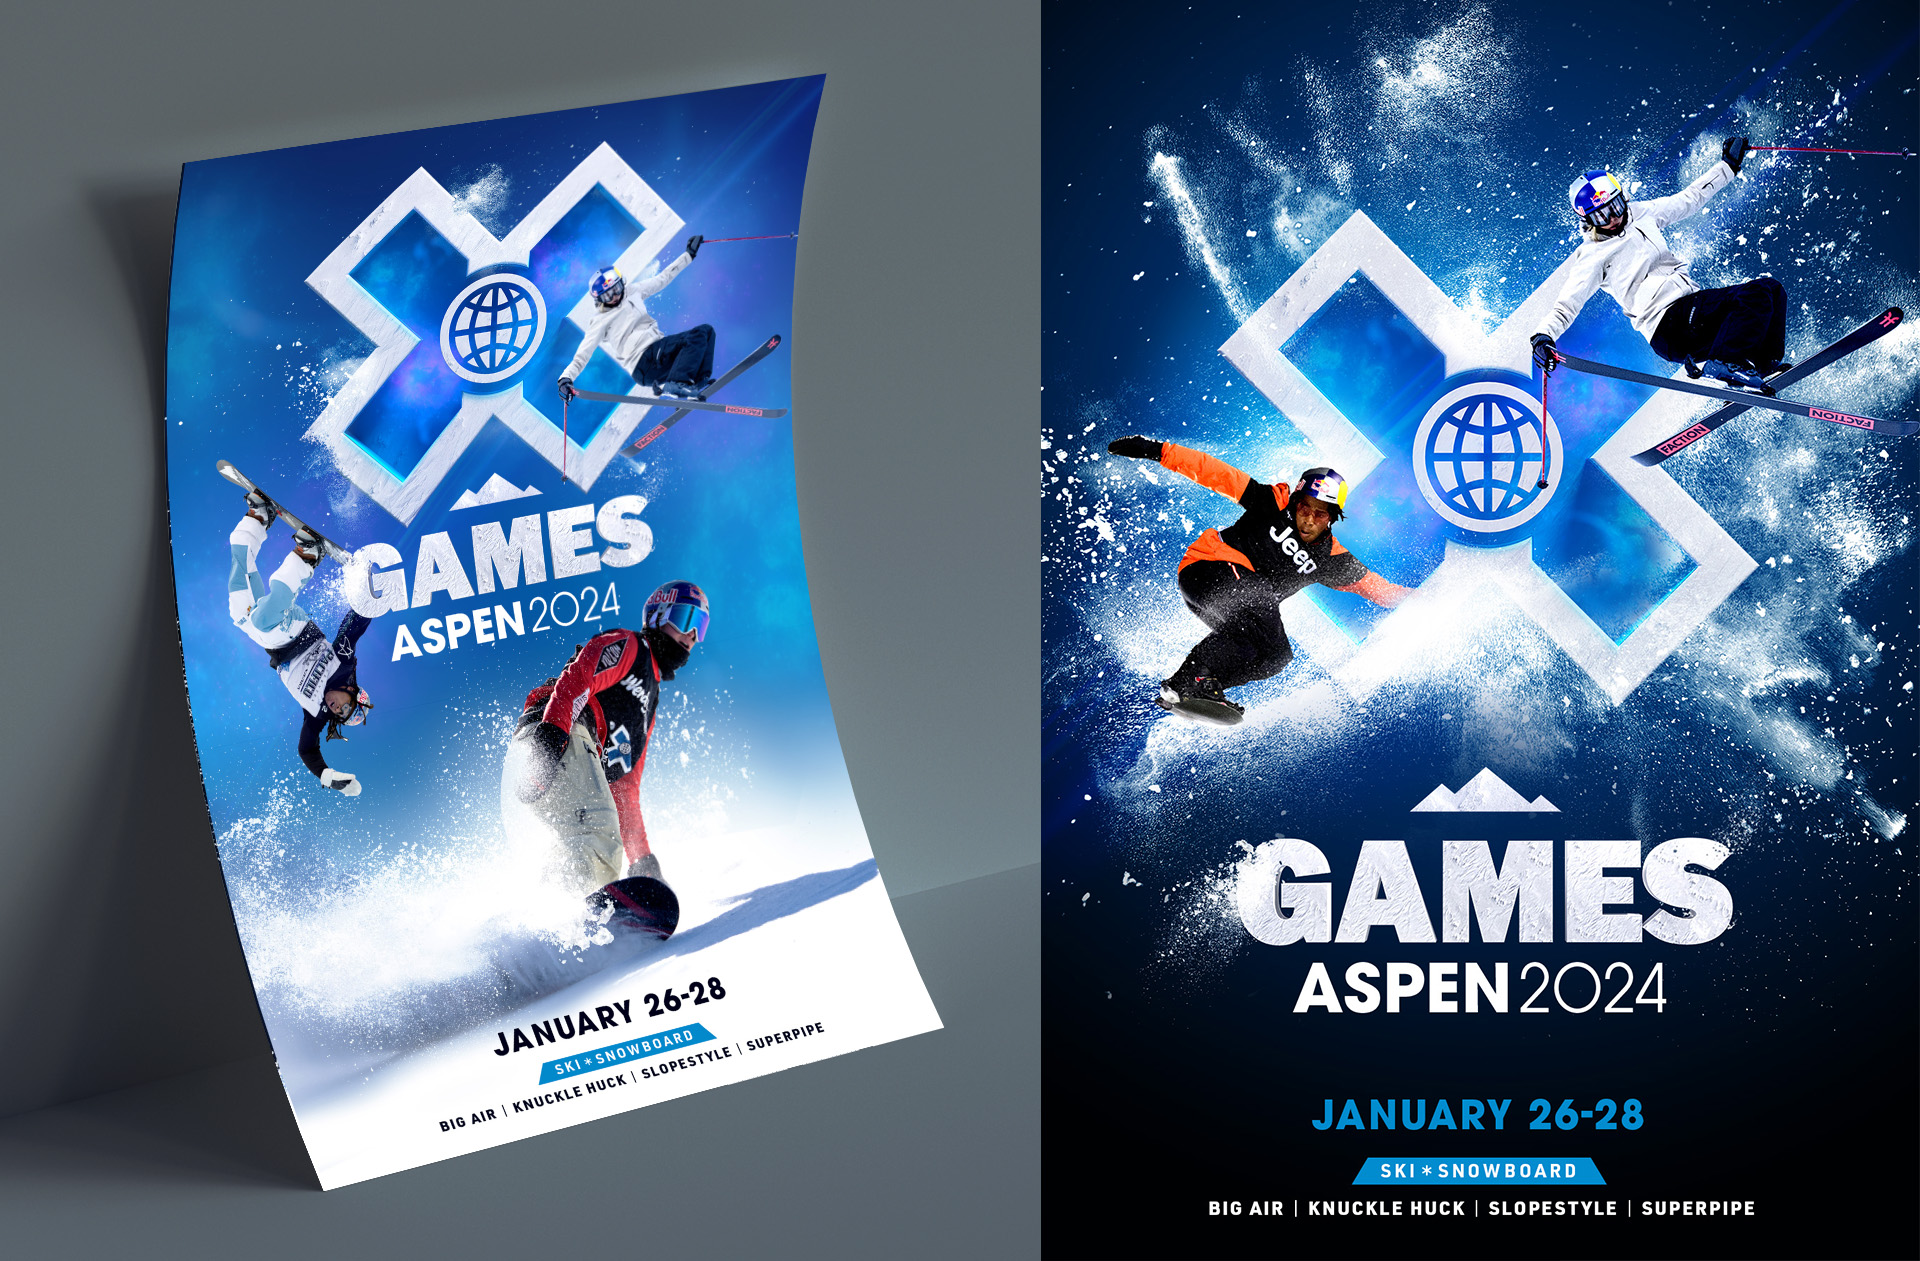 XGames Aspen 2024 poster design